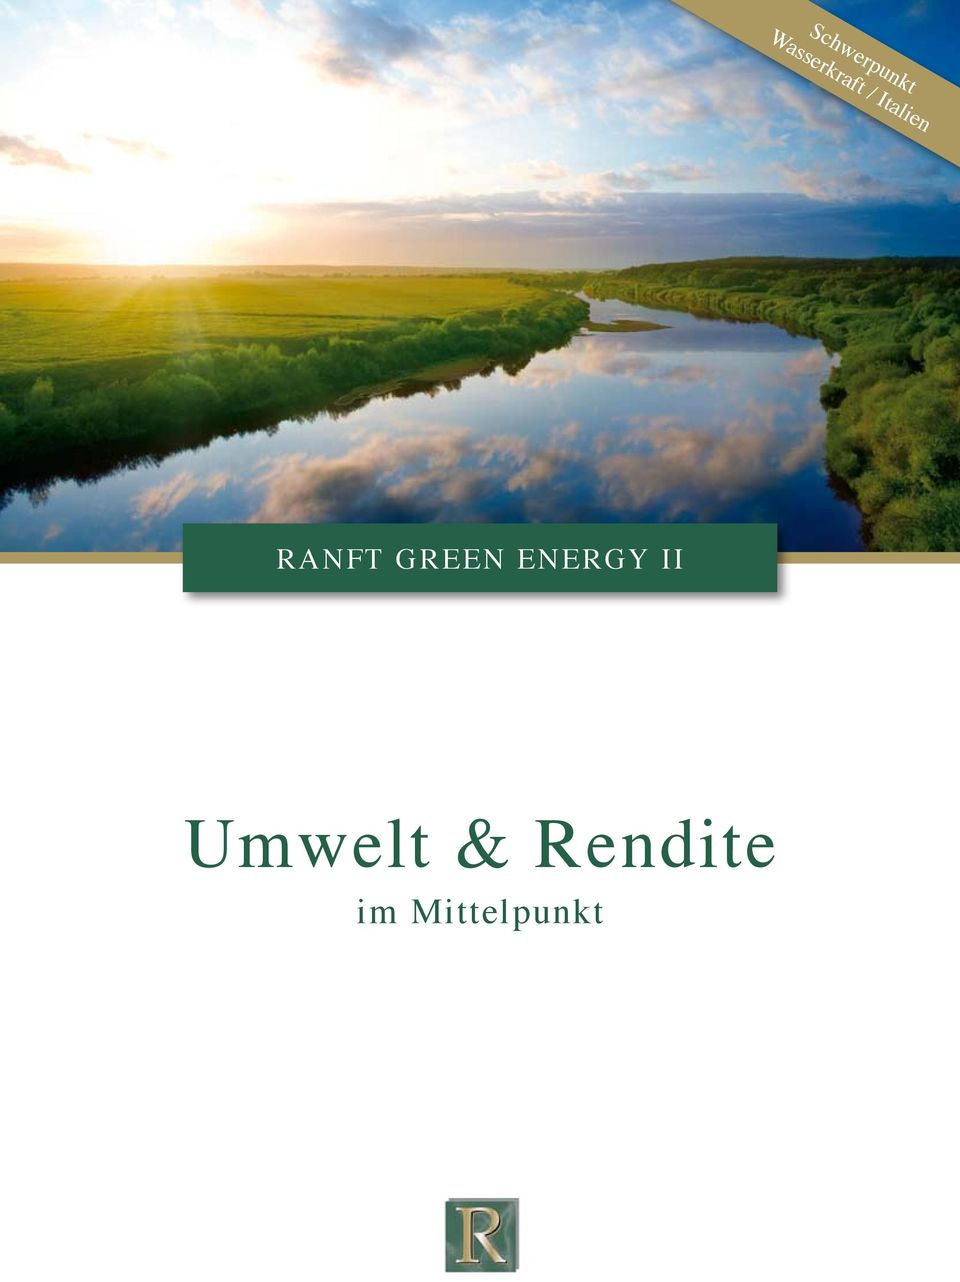 RANFT GREEN ENERGY II